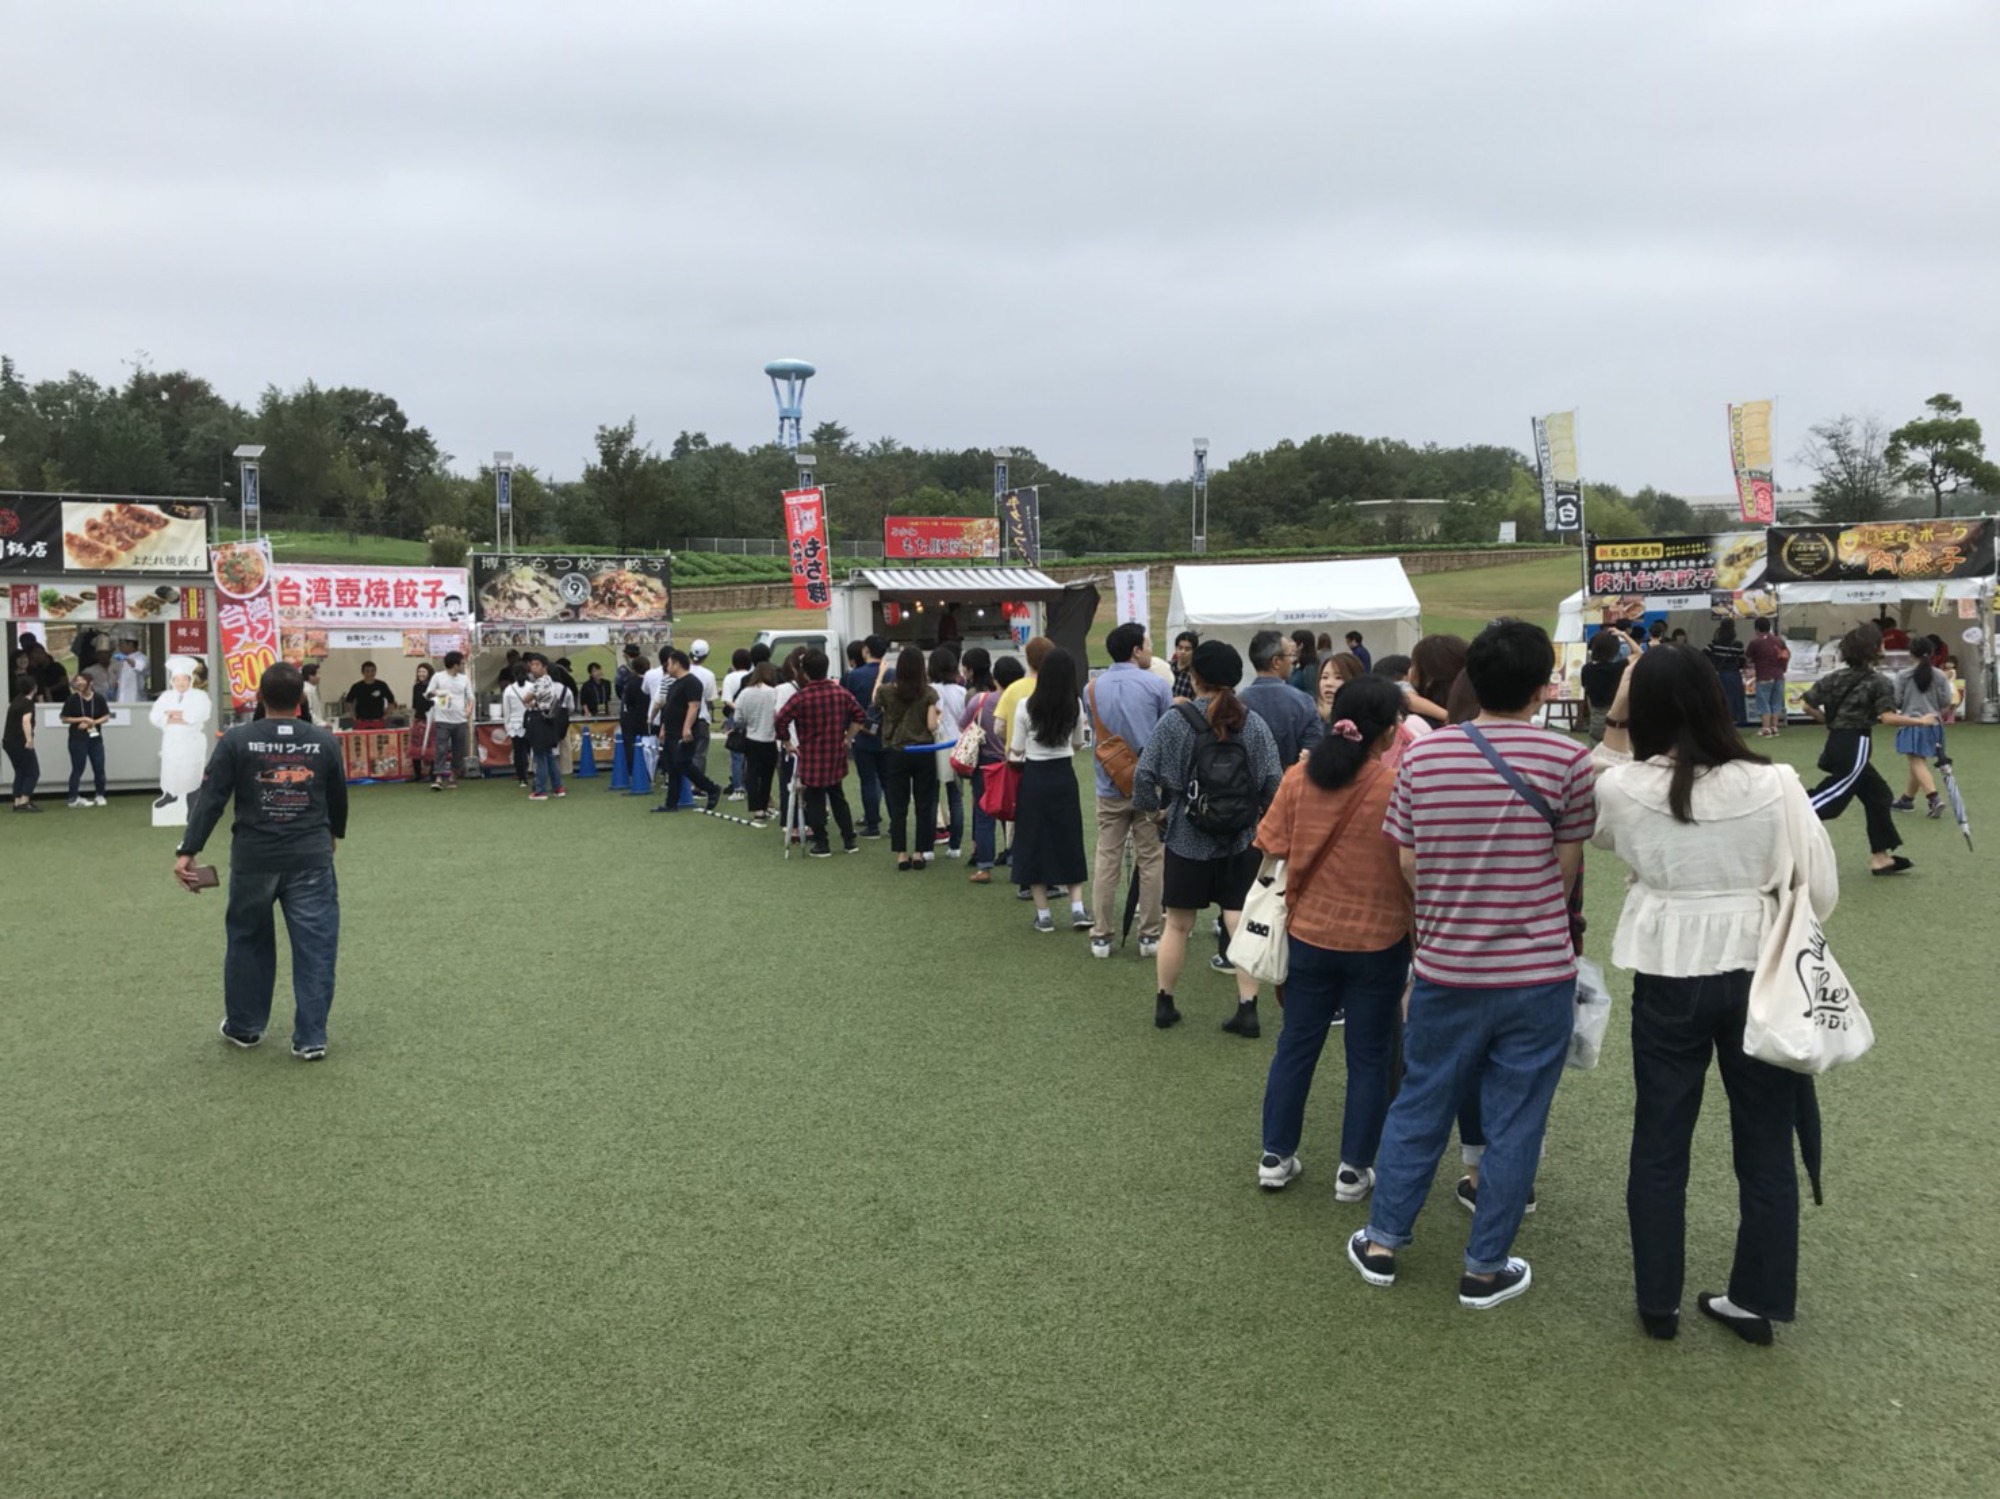 【出店】第一回全日本餃子祭り in モリコロパーク